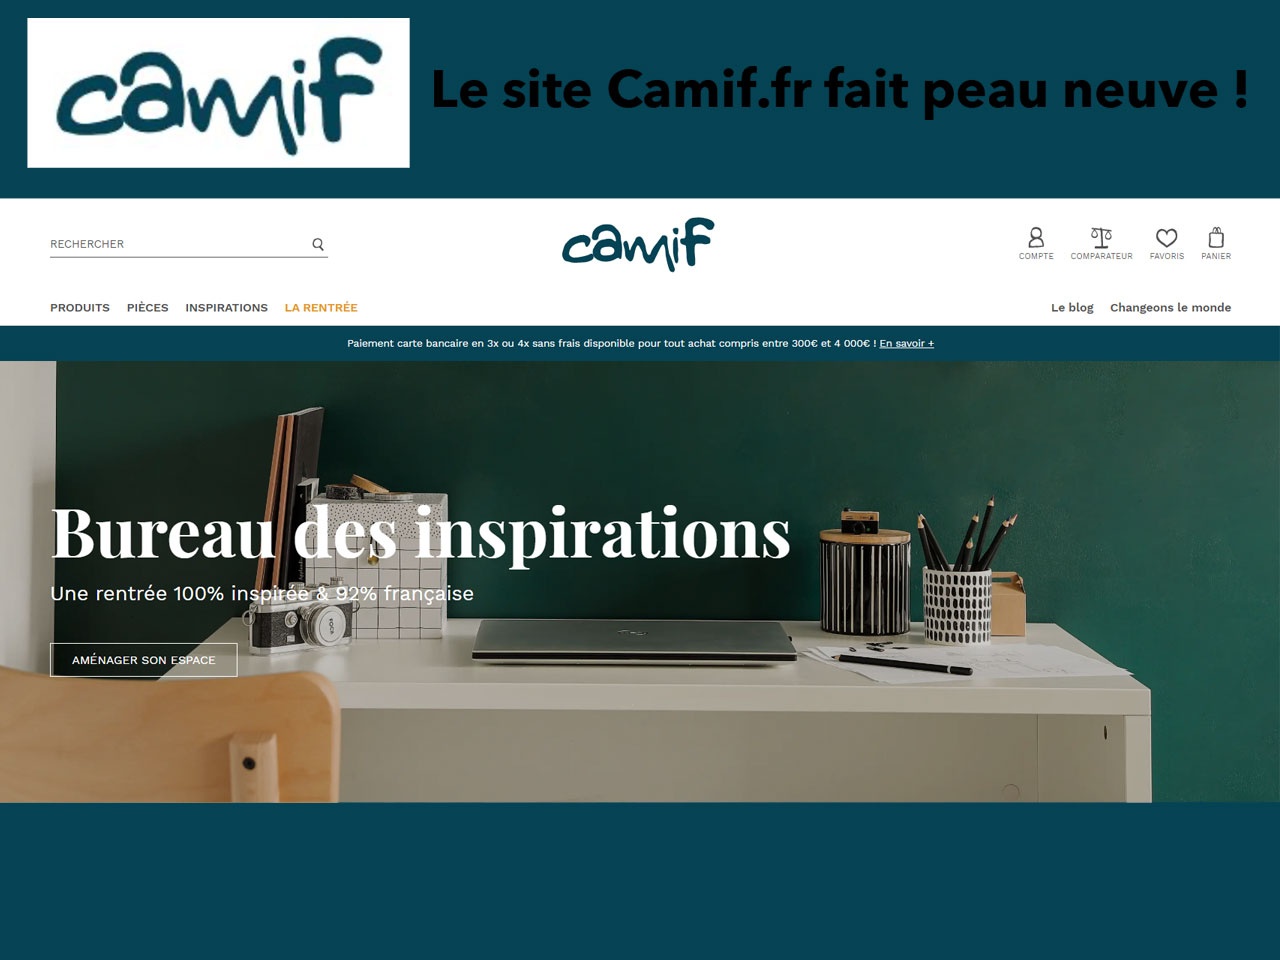 Le site Camif.fr a fait peau neuve pour offrir la meilleure expérience digitale à ses clients !